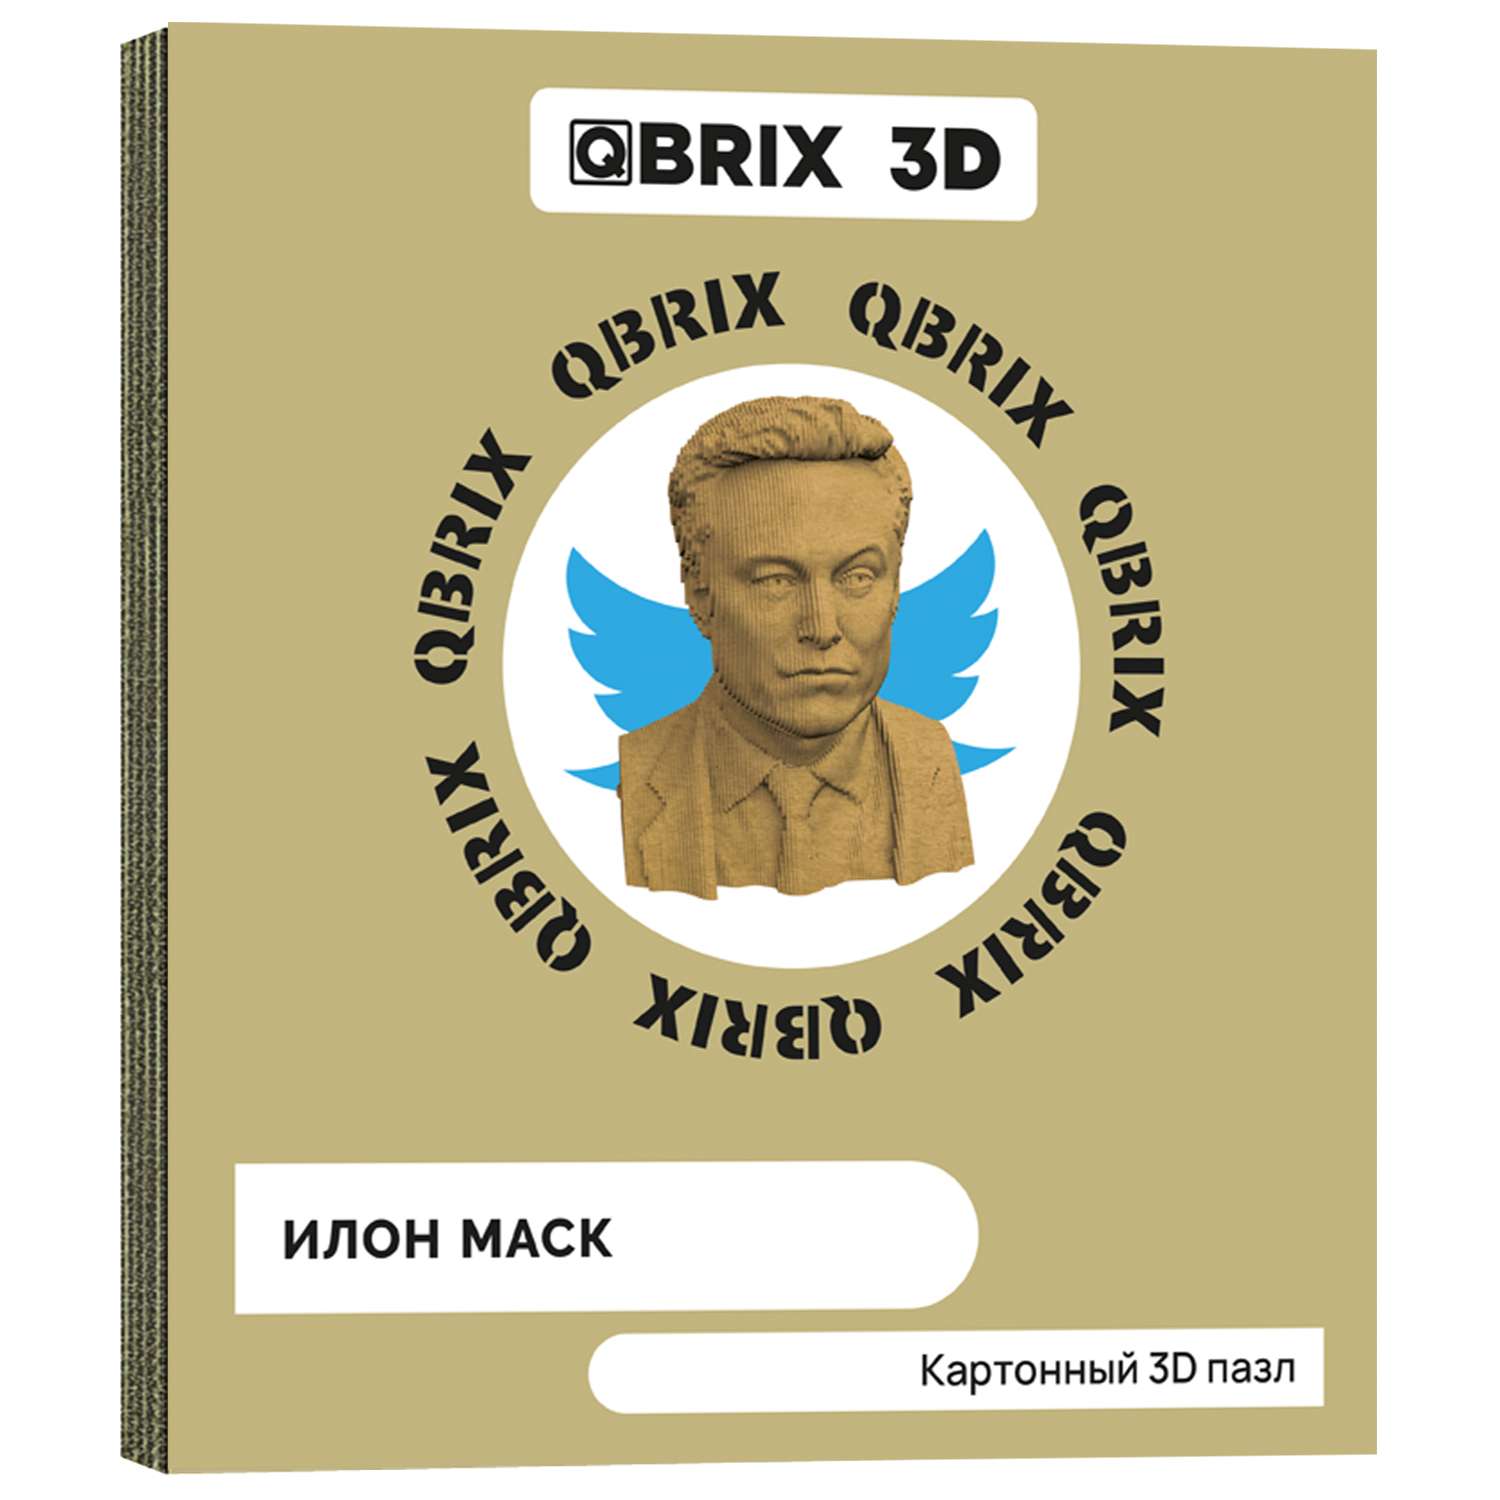 Конструктор QBRIX 3D картонный Илон Маск 20027 20027 - фото 1